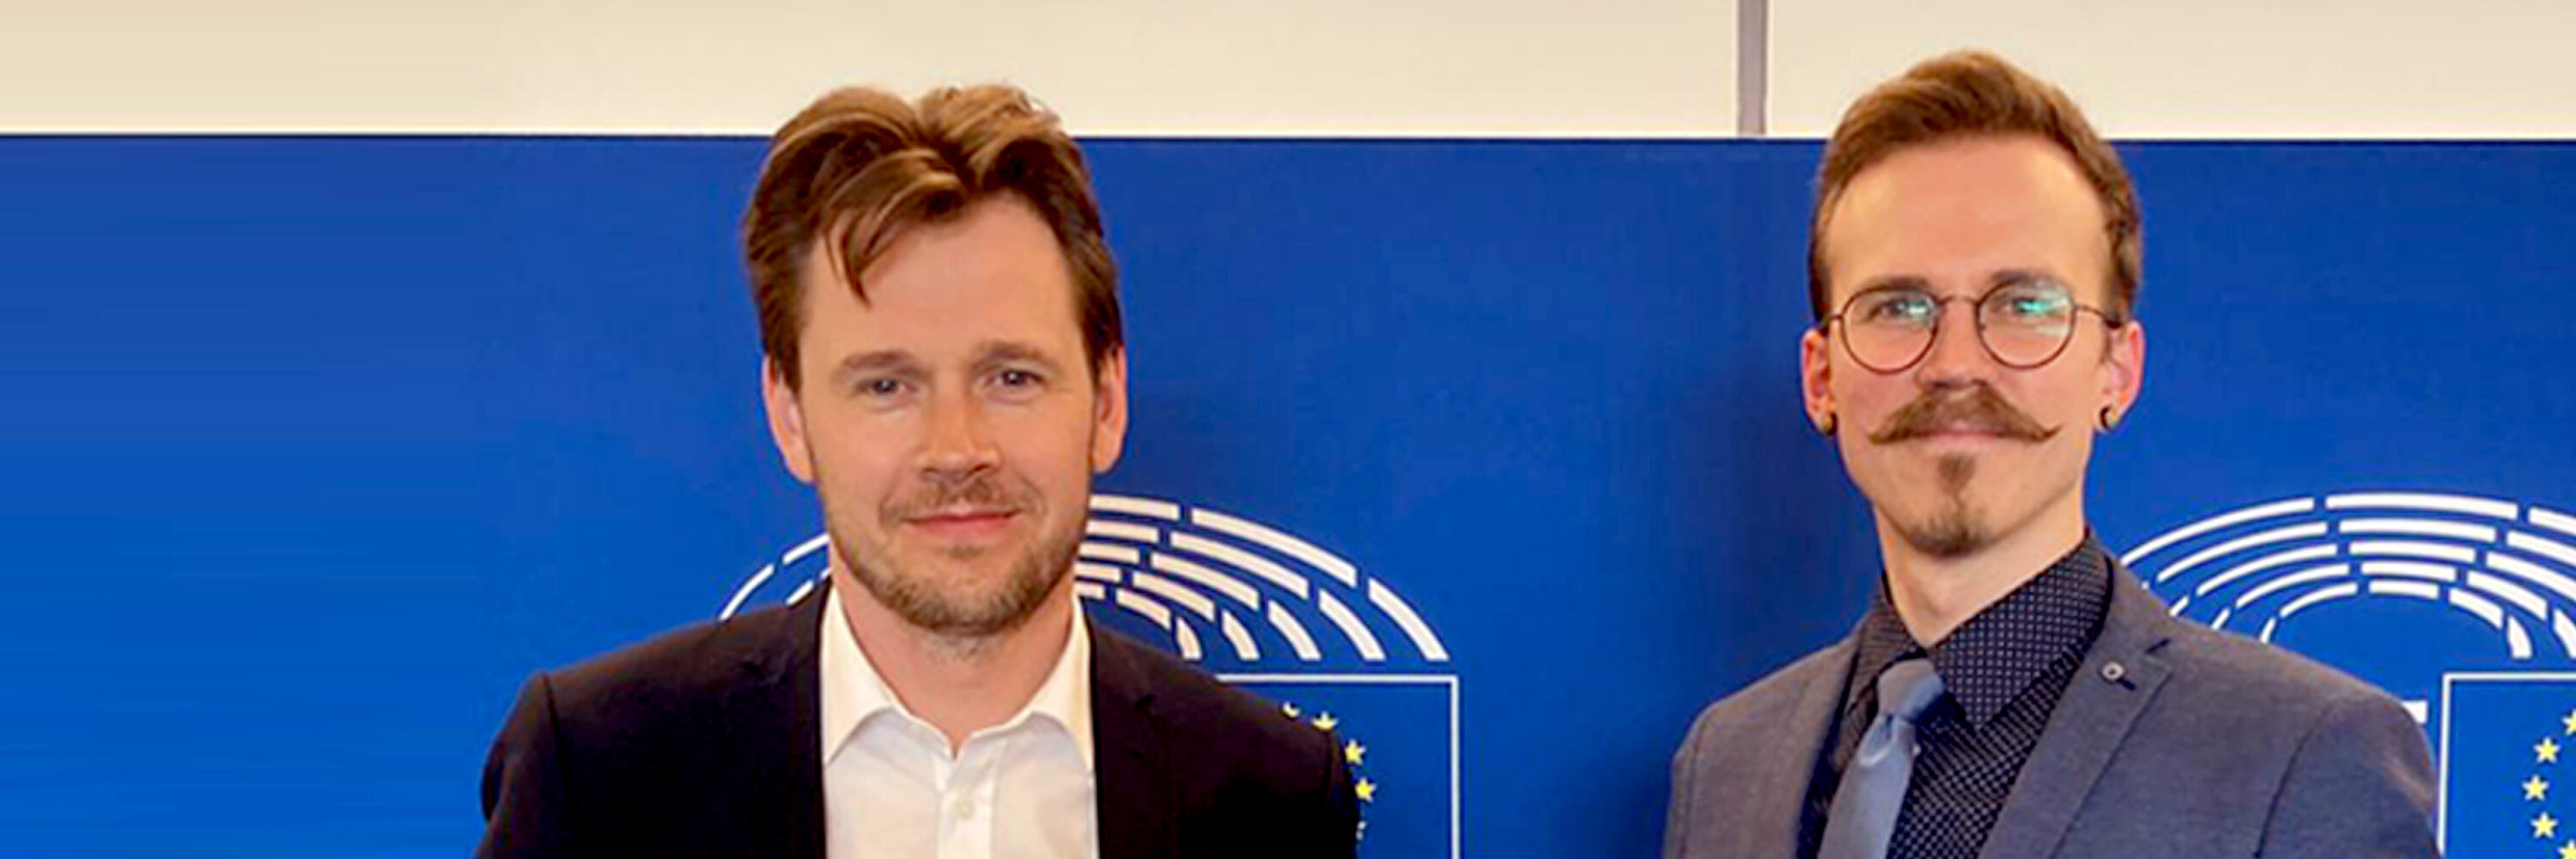 Niels Fuglsang EU Kommissar für Tierschutz